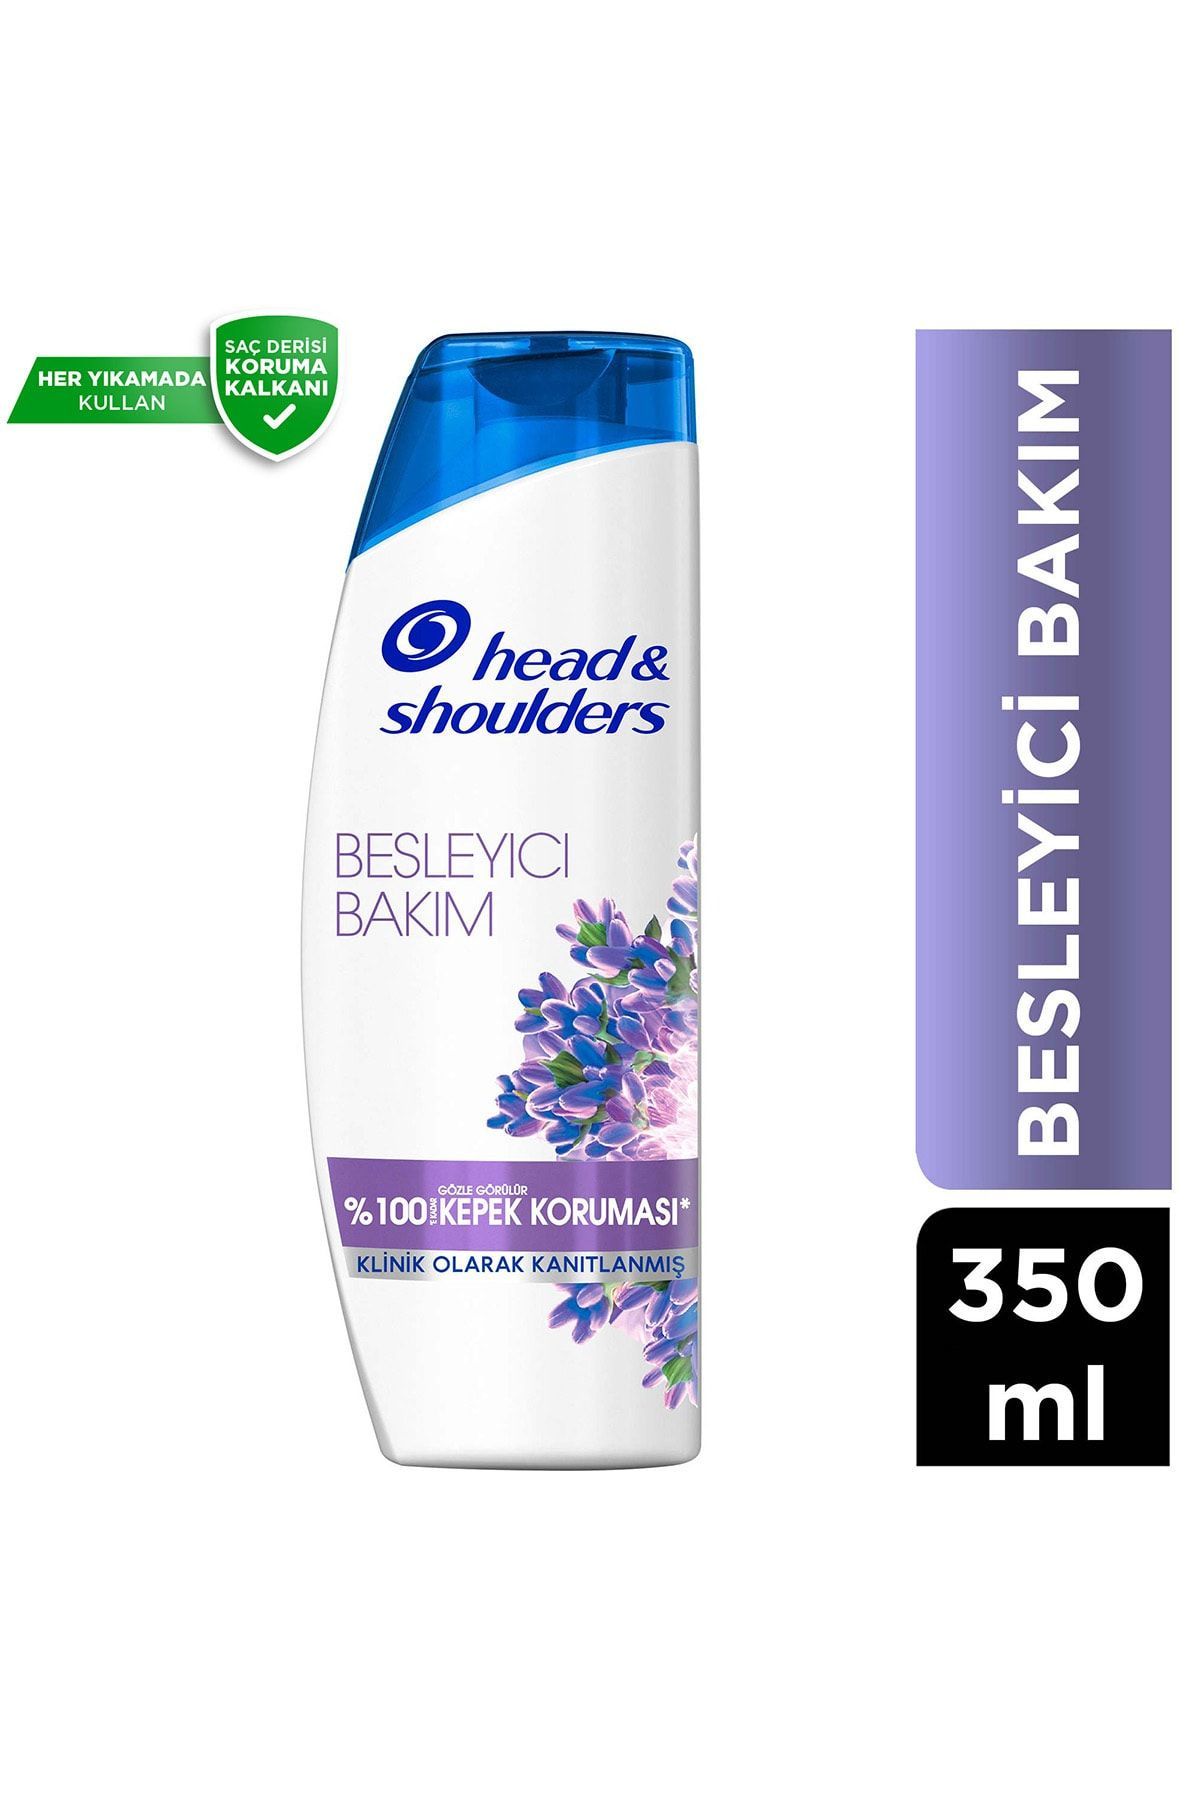 Head & Shoulders Besleyici Bakım Kepeğe Karşı Etkili Şampuan 350 ml